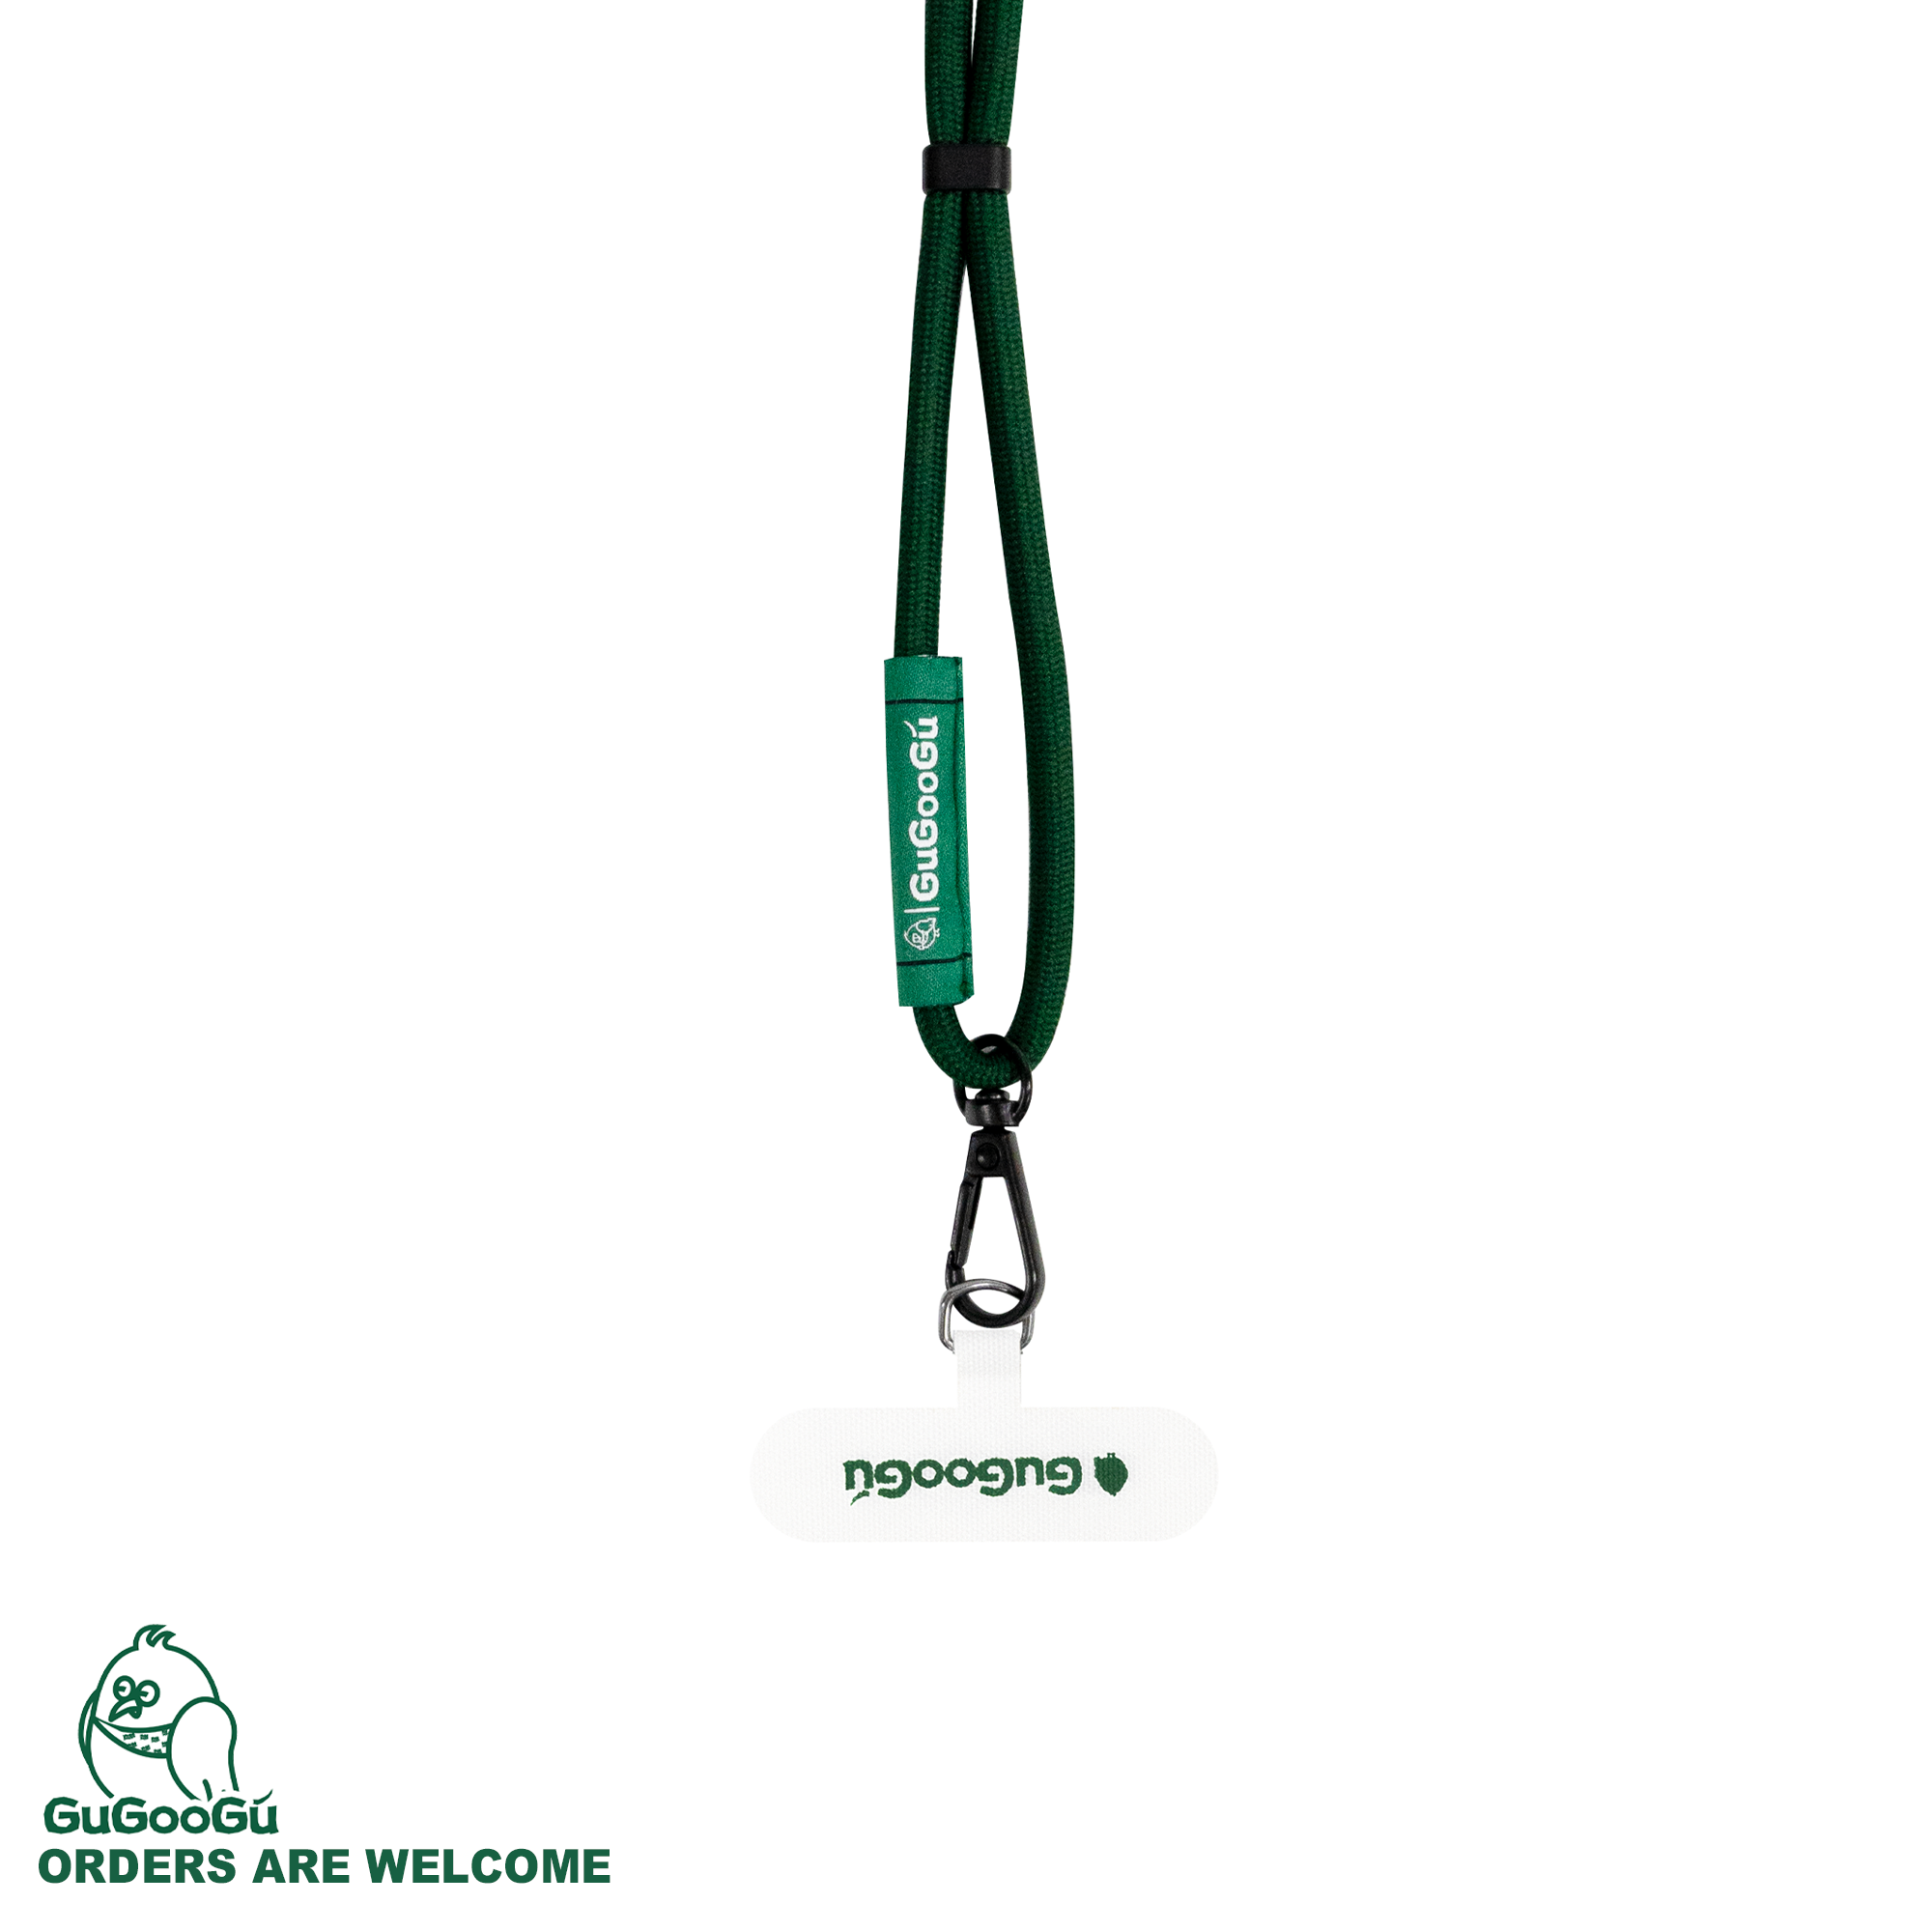 這是GUGOOGU的手機掛繩套裝，包含了一條純綠色的手機掛繩，和一個白色的手機夾片。